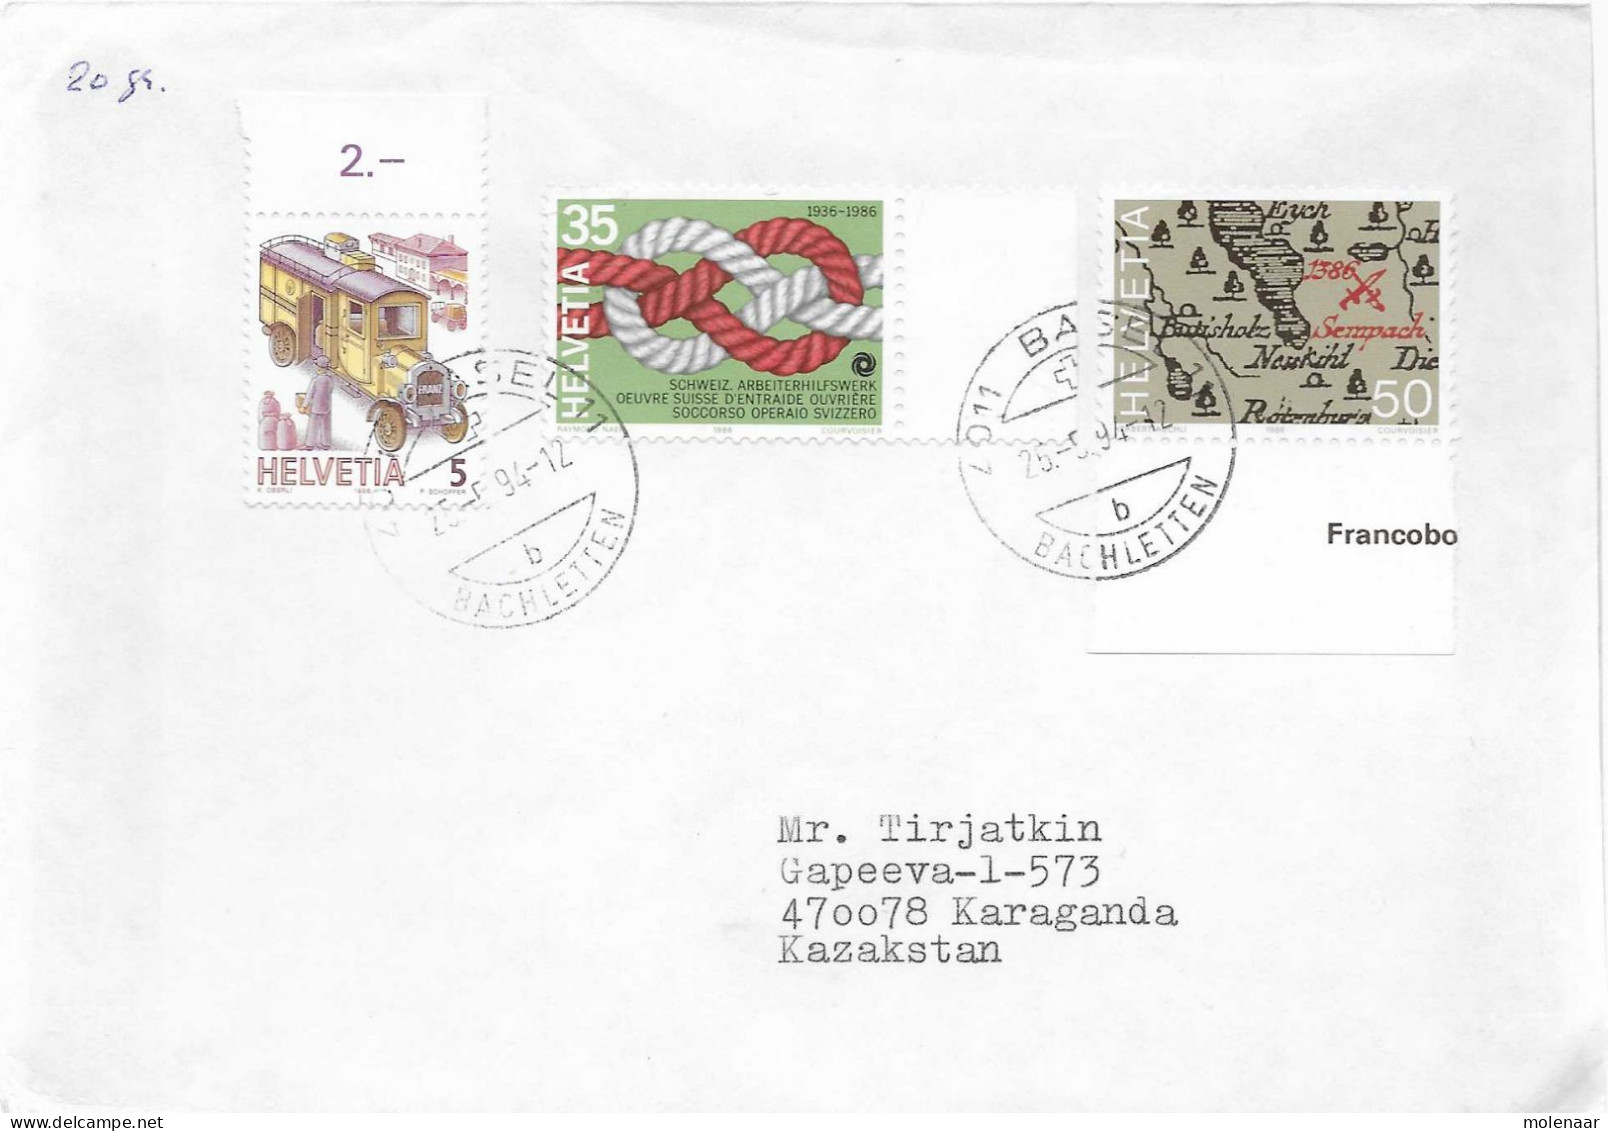 Postzegels > Europa > Zwitserland > 1990-1999 > Brief Uit 1994 Met 3 Postzegels (17648) - Brieven En Documenten